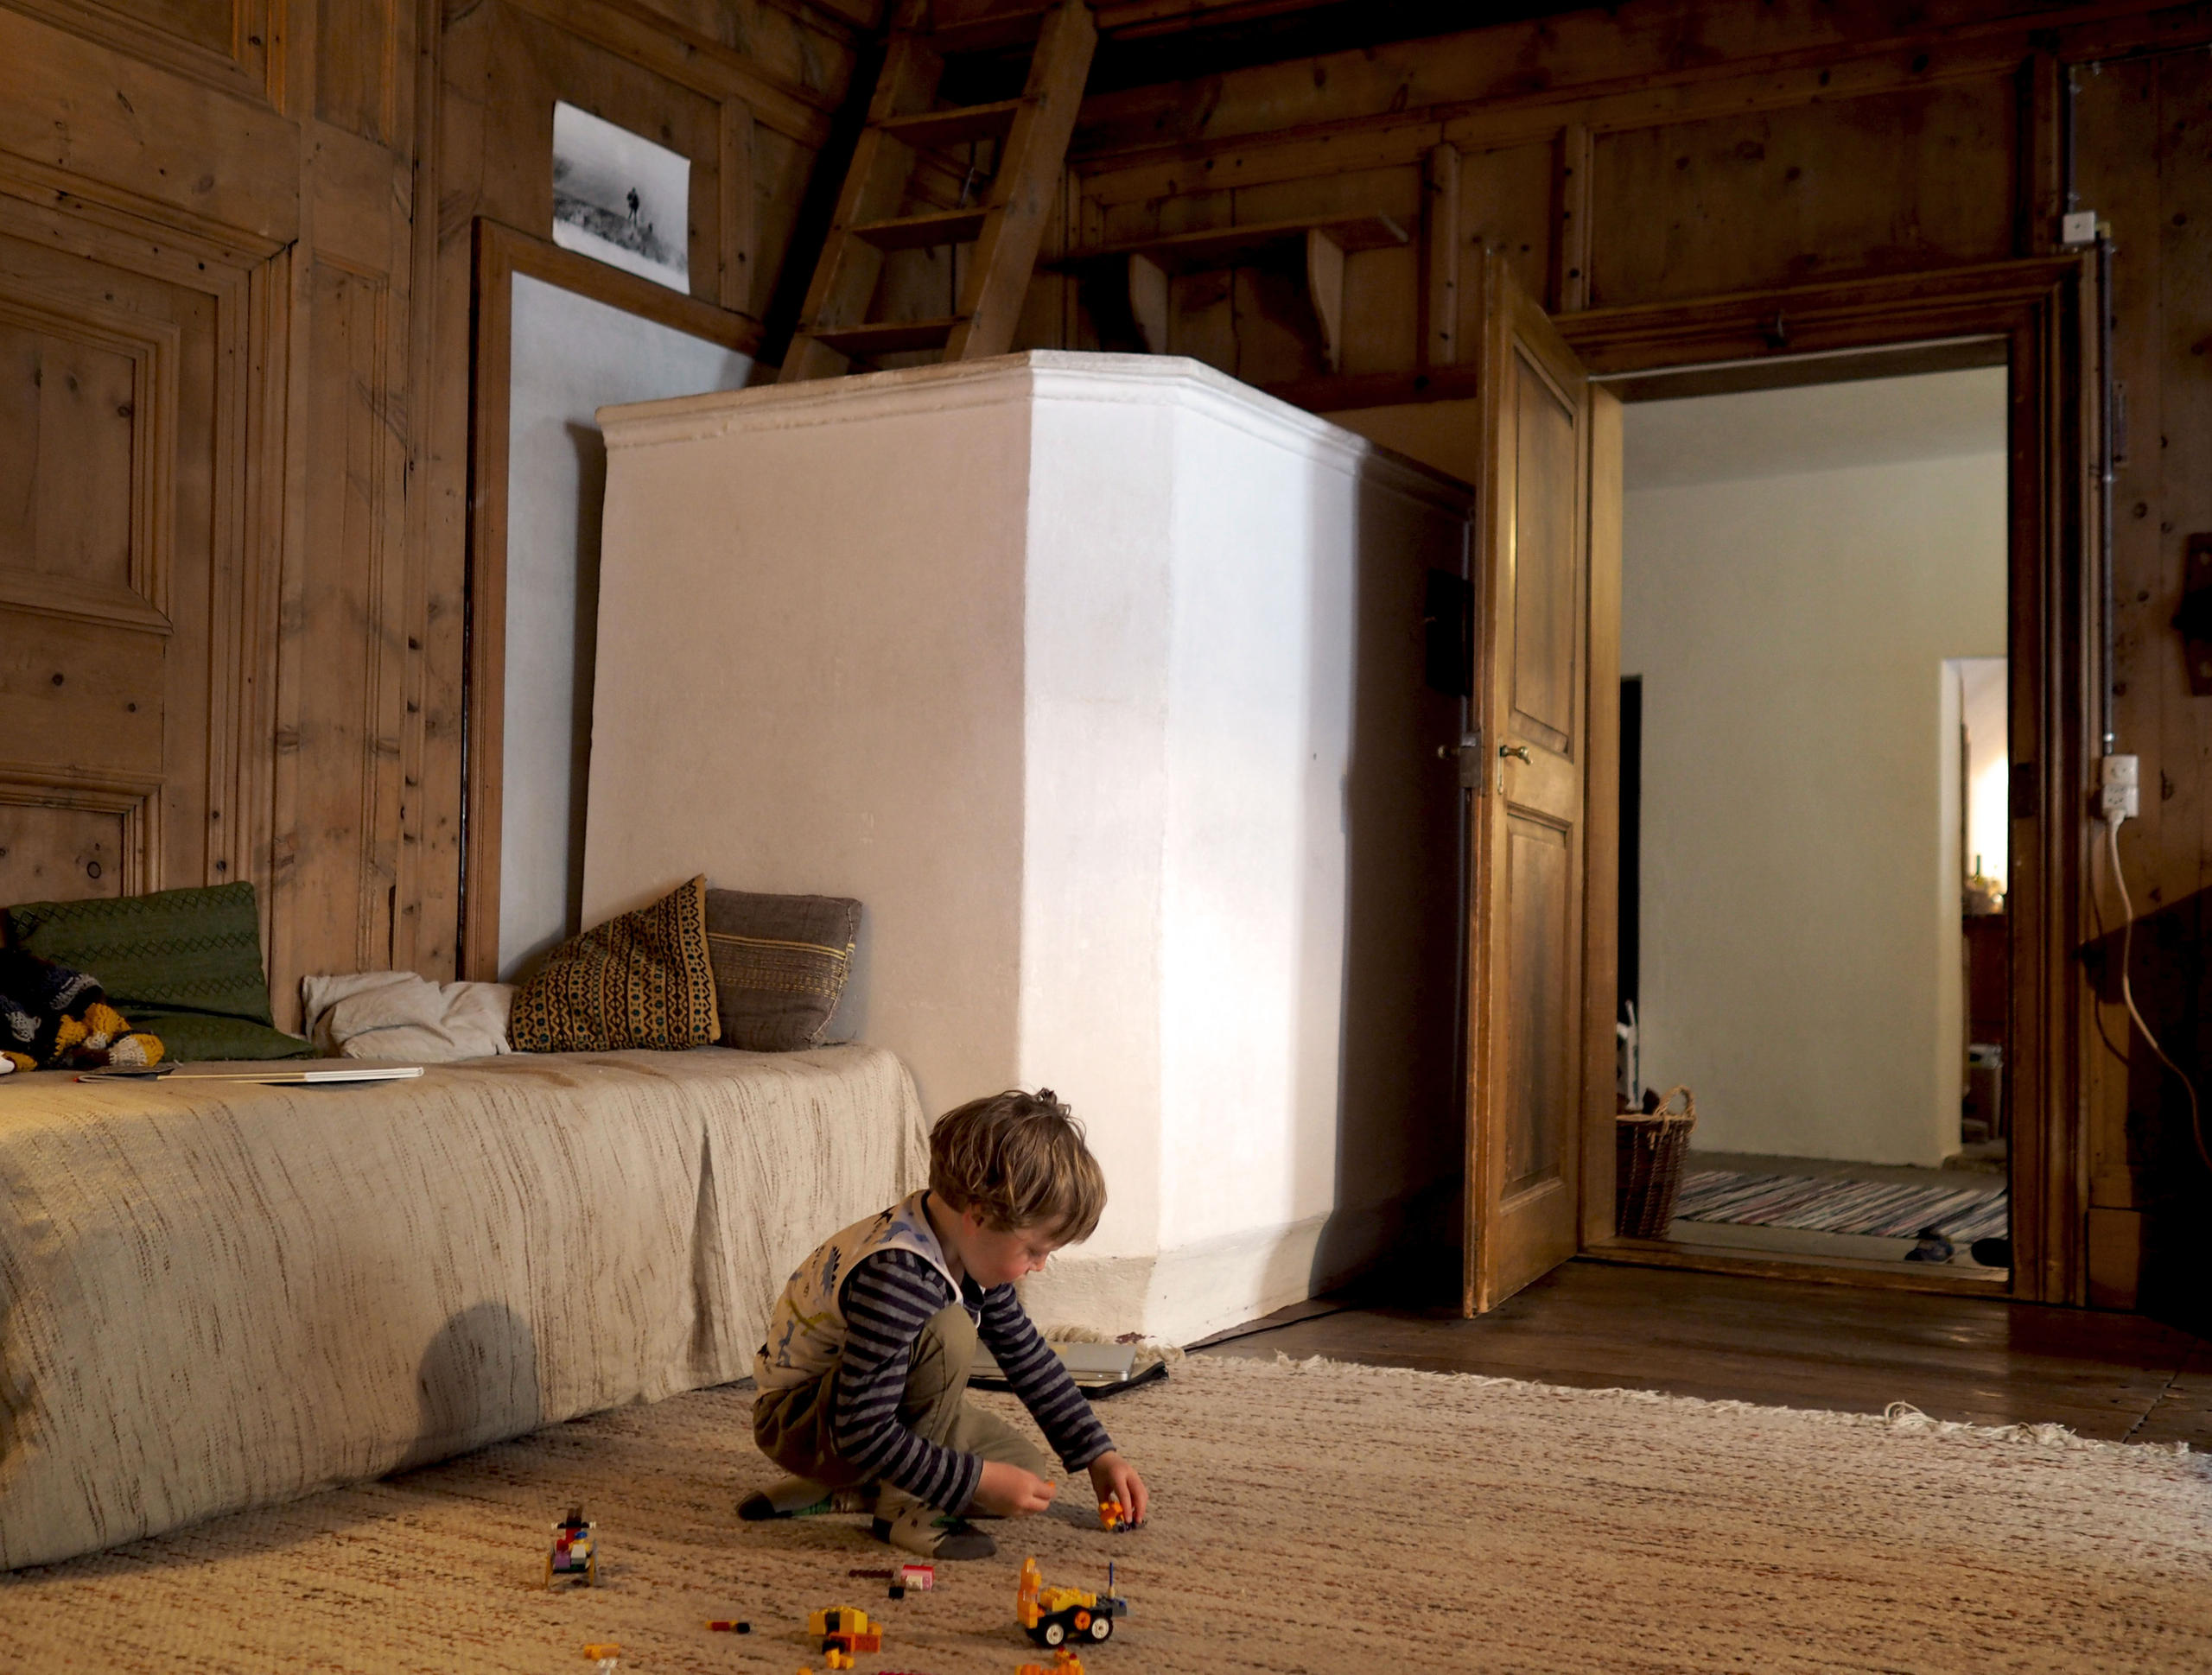 Enfant jouant sur un tapis dans un pièce en bois.